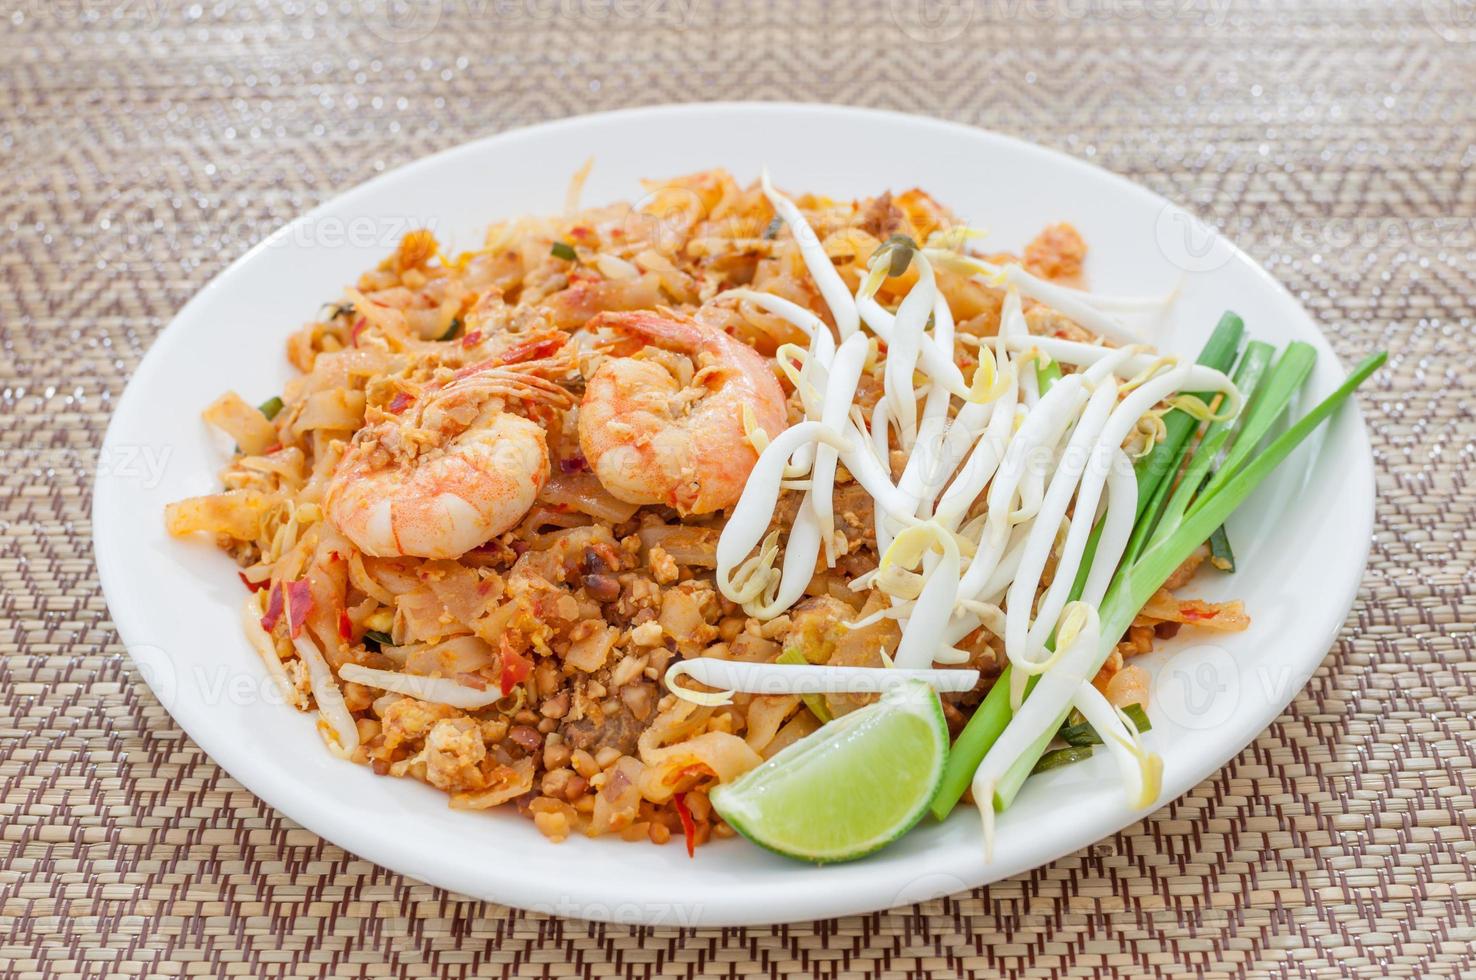 estilo tailandês de macarrão frito com camarão (pad thai) foto